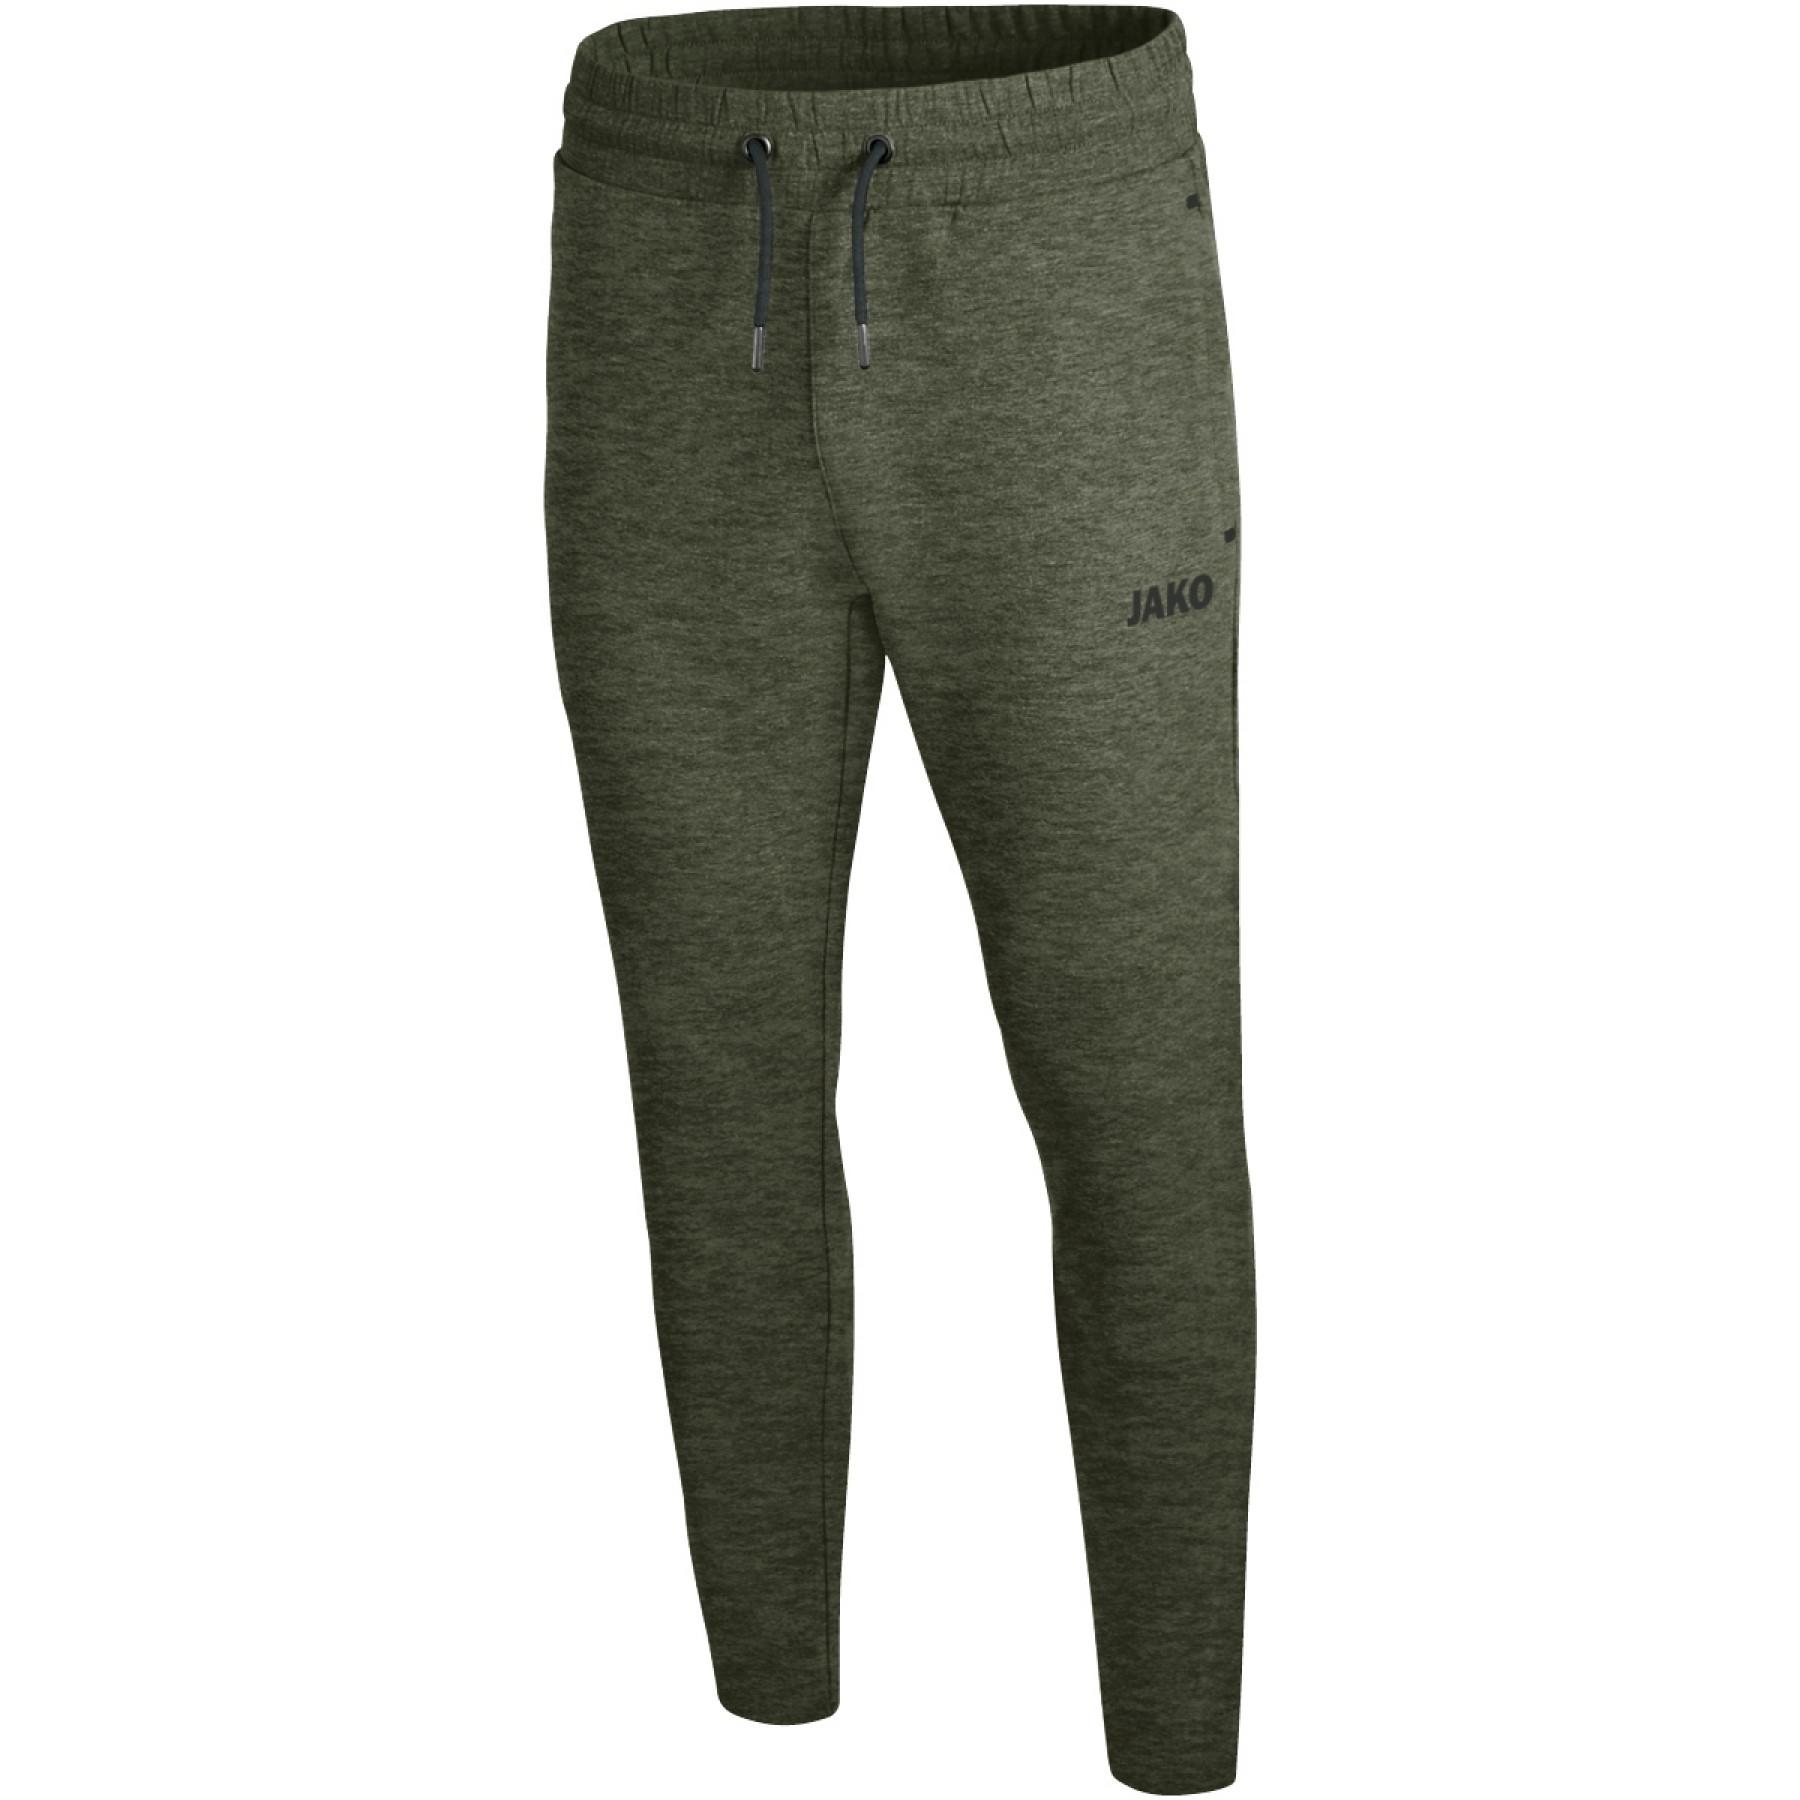 Pantalon Jako jogging Premium Basics